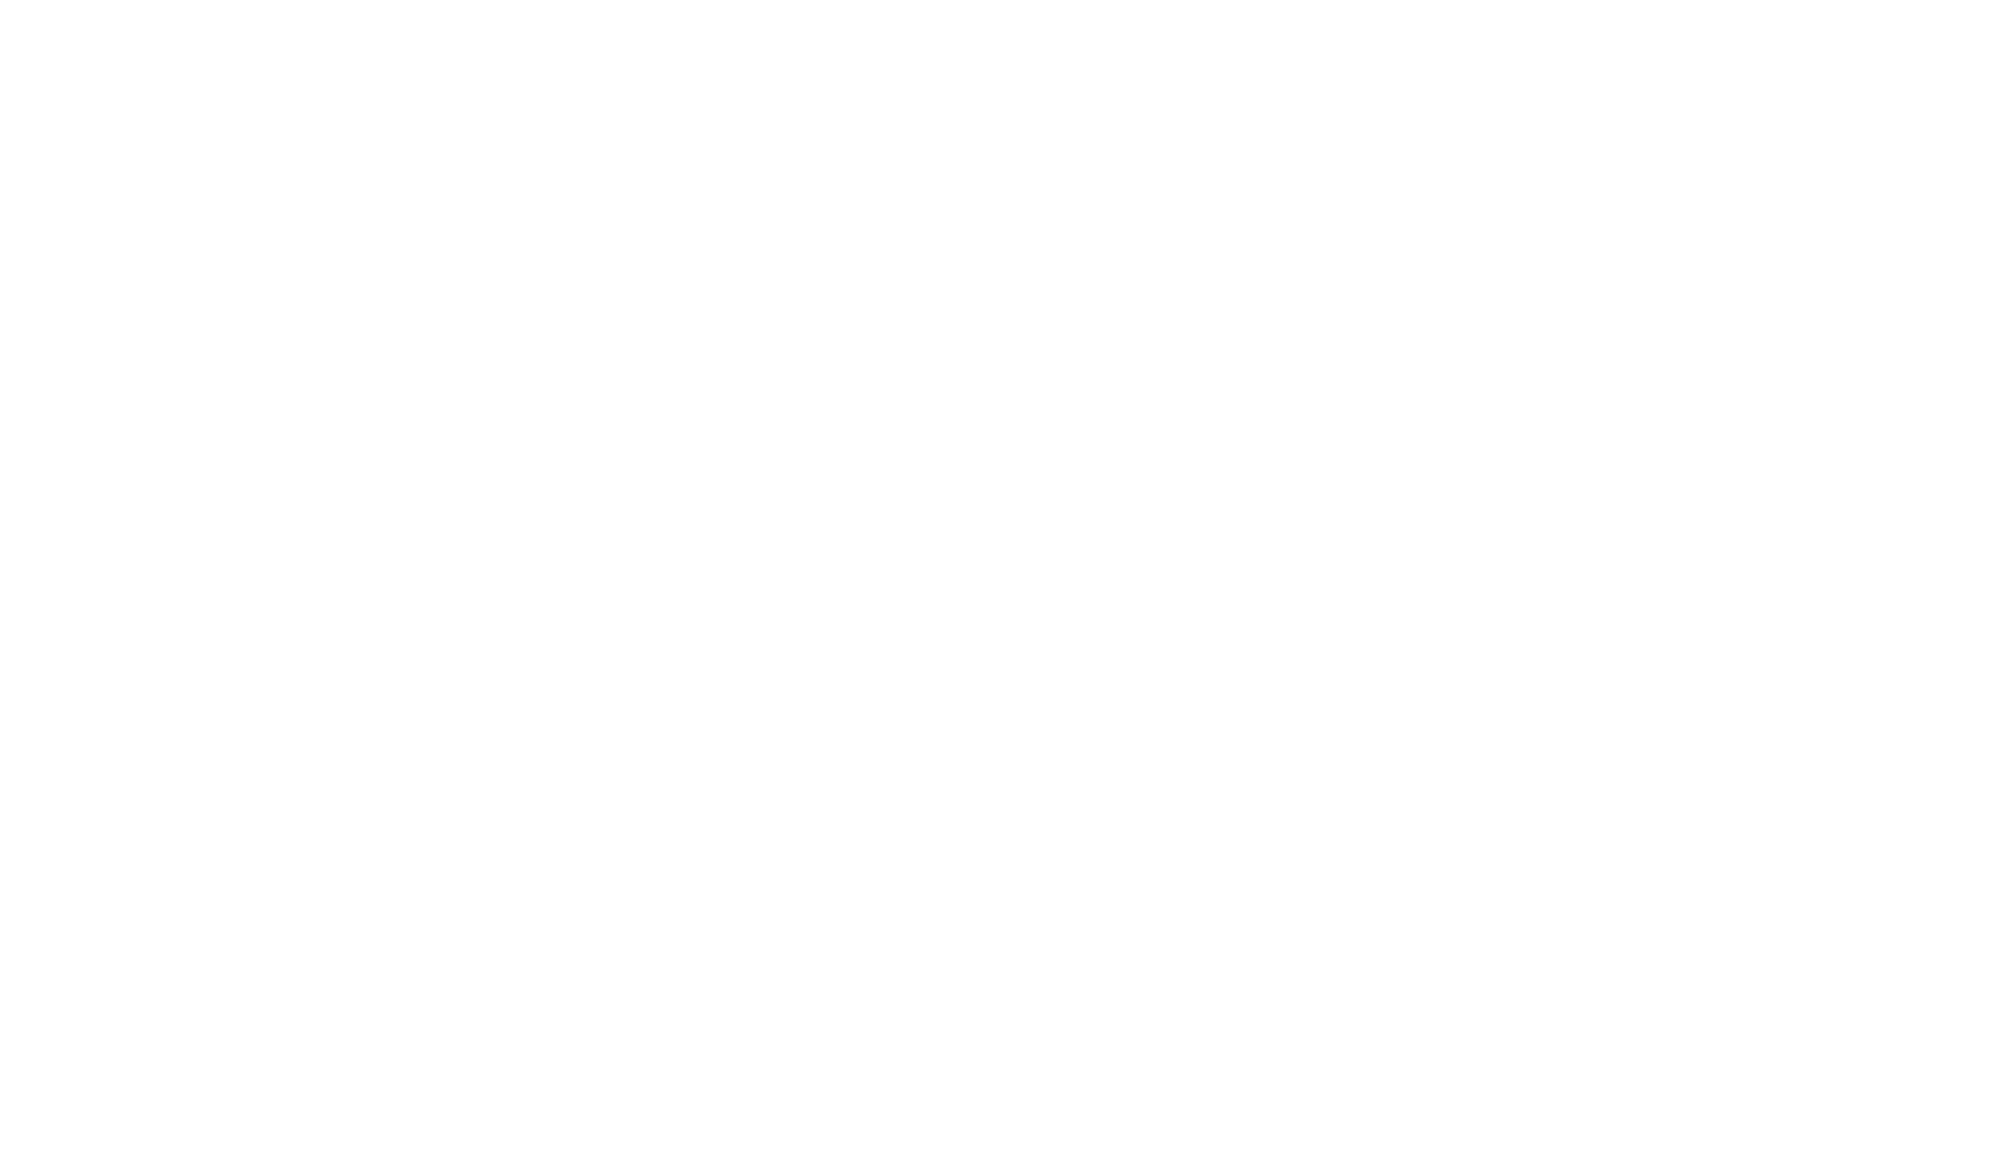 WALK Bridge